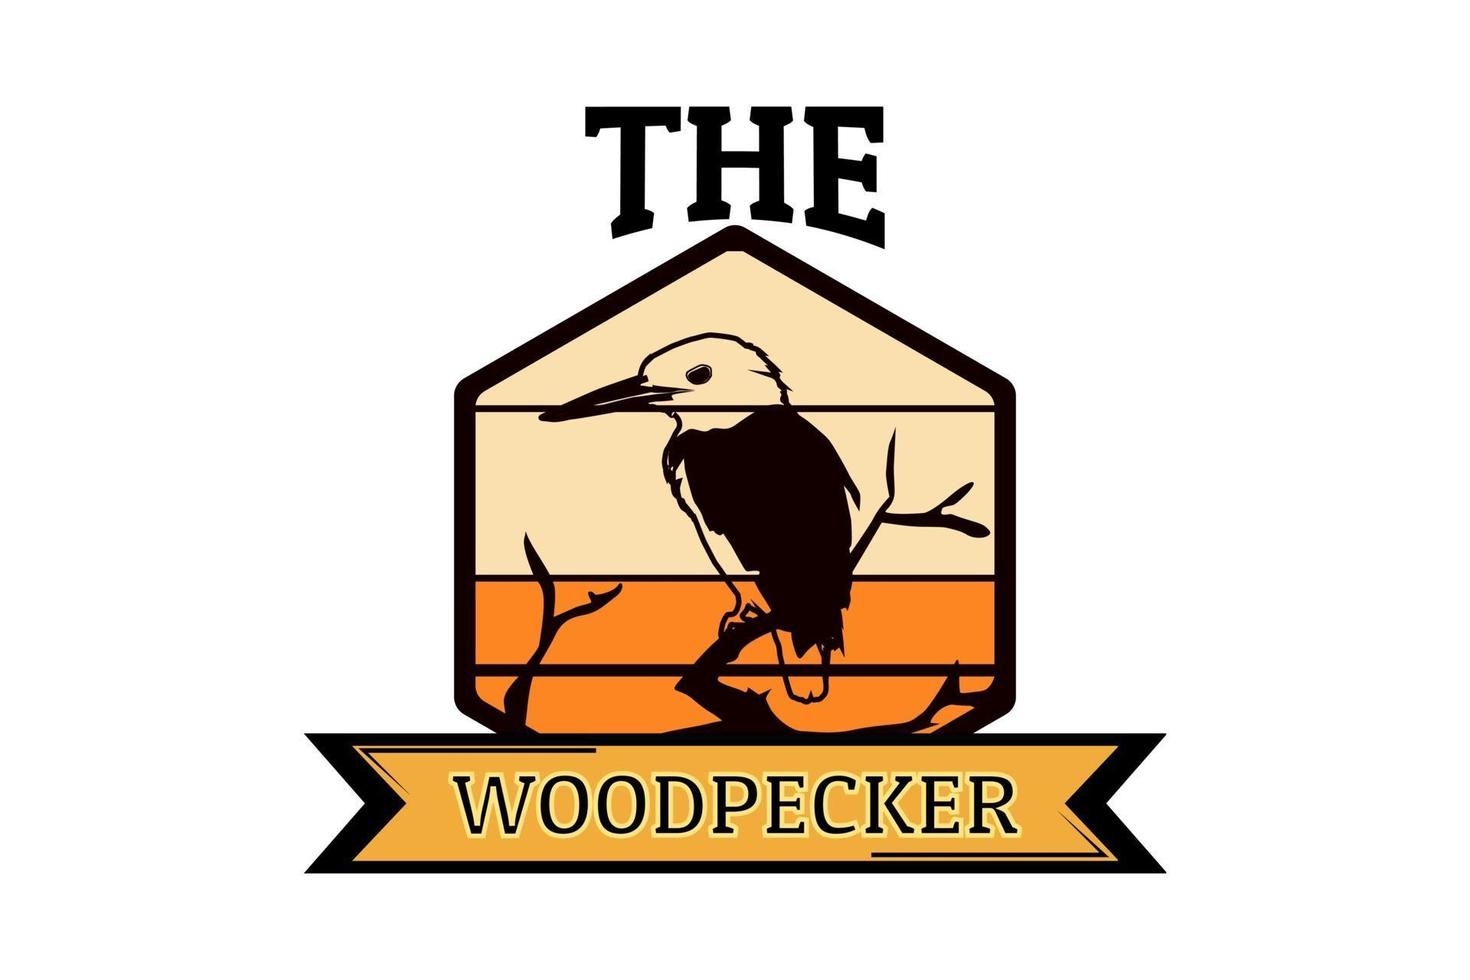 the woodpecker silhouette retro design vector